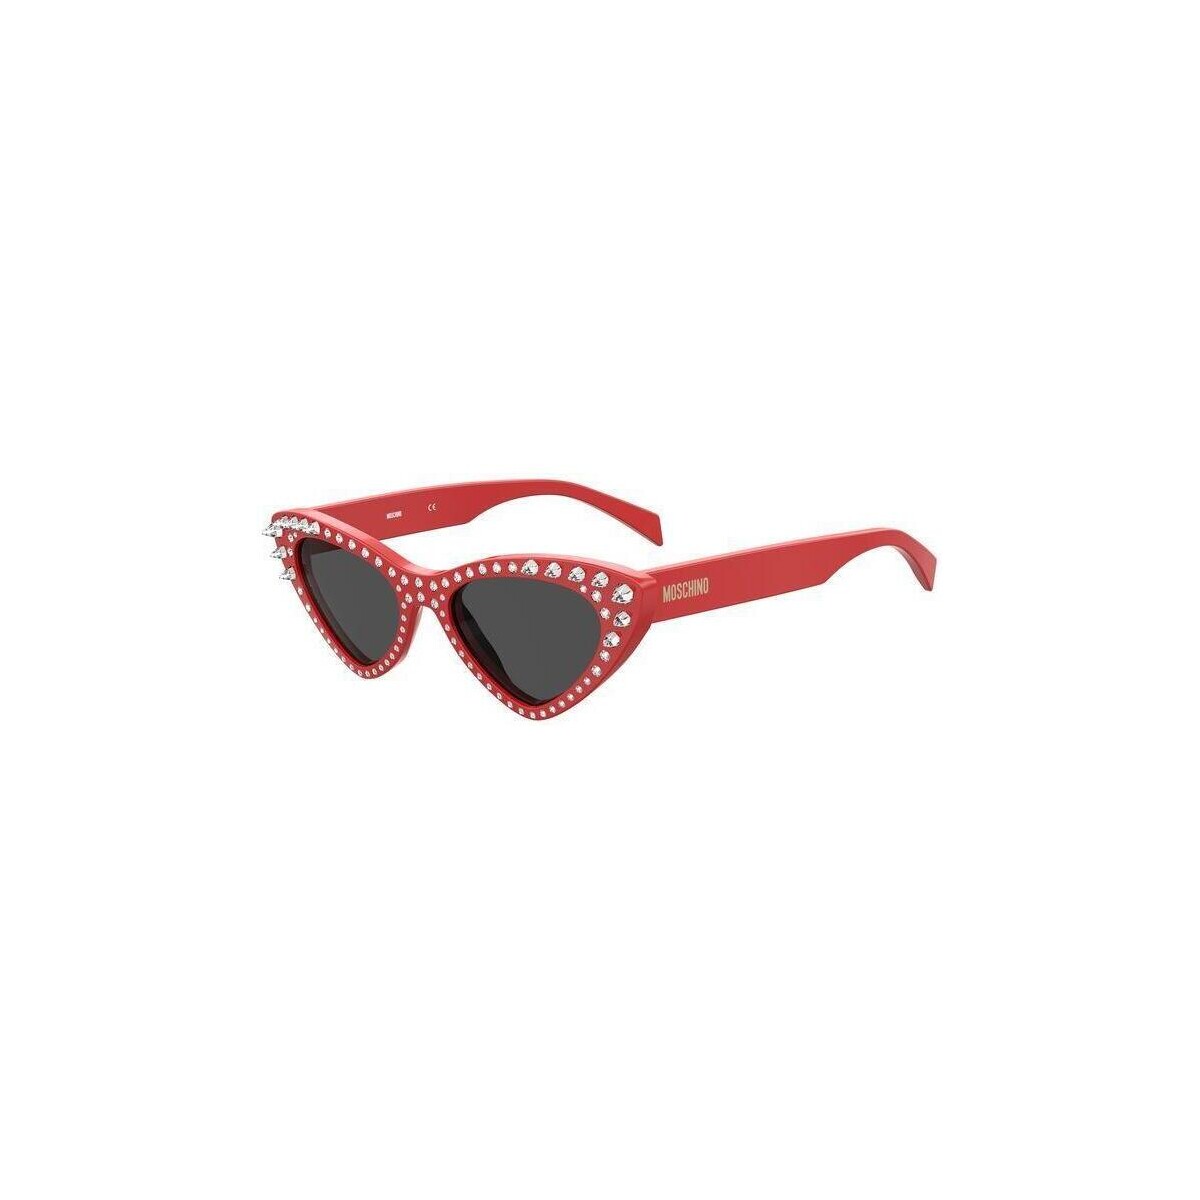 Orologi & Gioielli Donna Occhiali da sole Moschino MOS006/S/STR Occhiali da sole, Rosso/Grigio, 52 mm Rosso